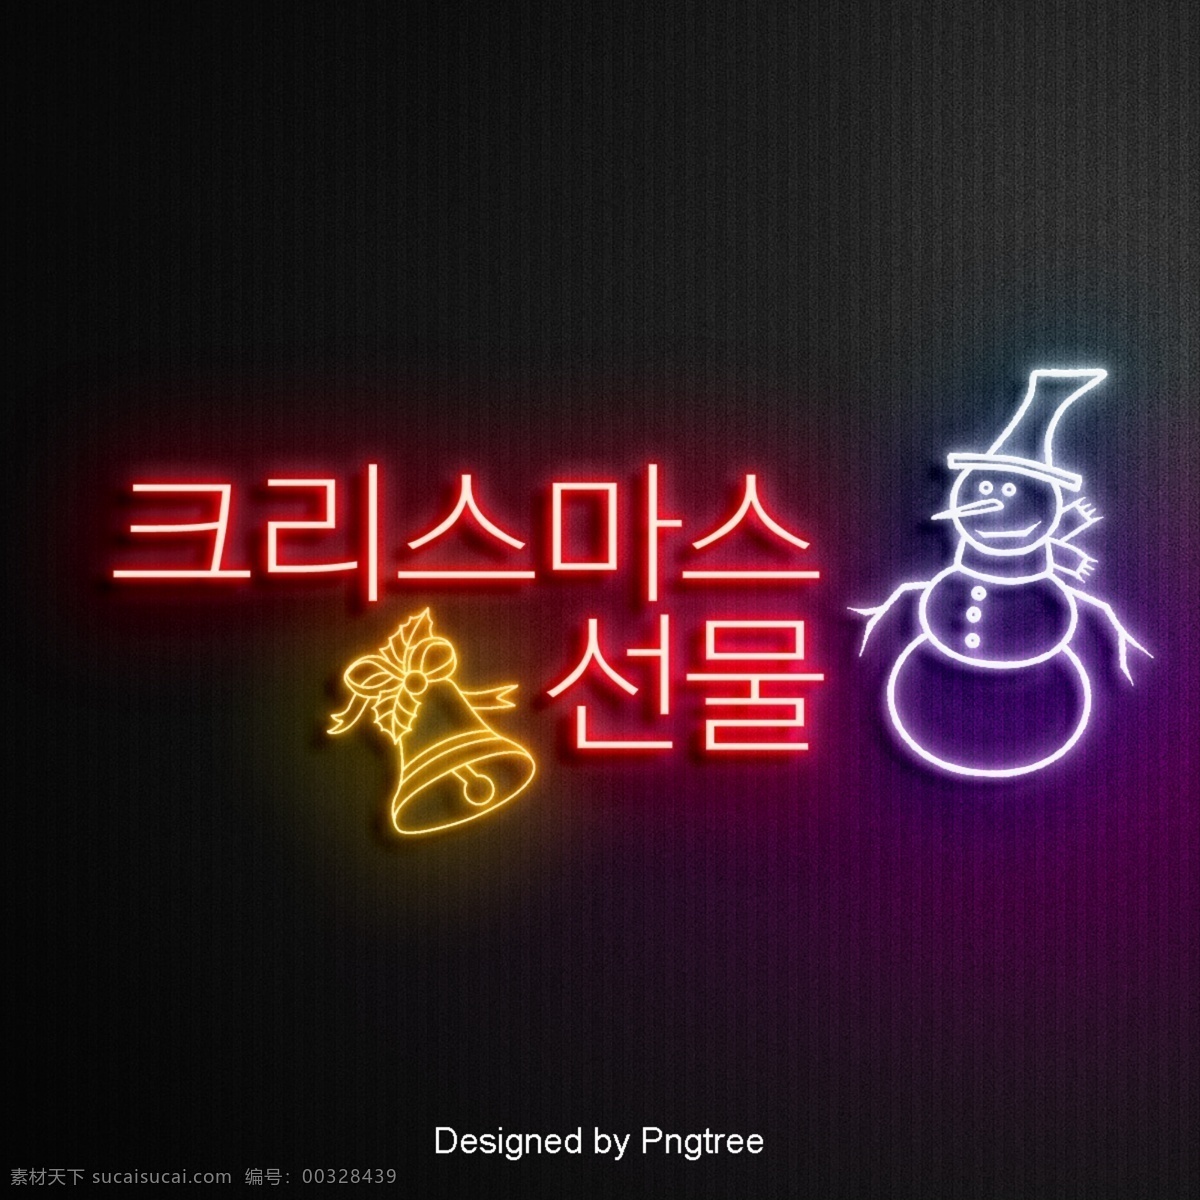 圣诞节 场景 上 霓虹灯 ai材料 现场 韩国 颜色 影响 发光 节 礼品